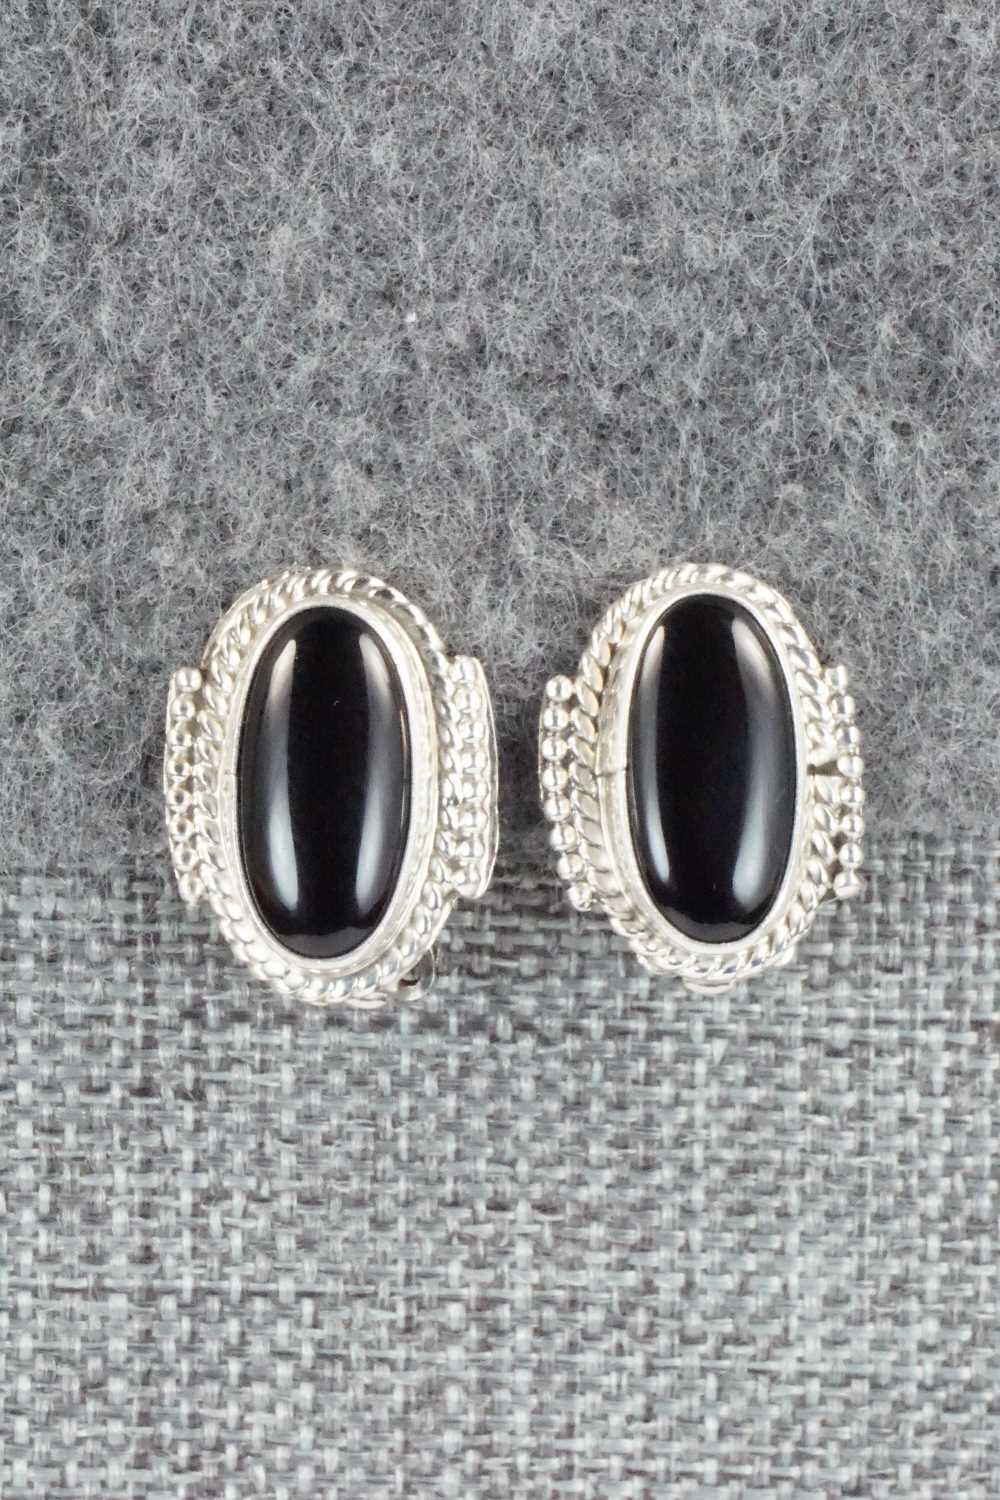 Onyx & Sterling Silver Earrings - Jan Mariano